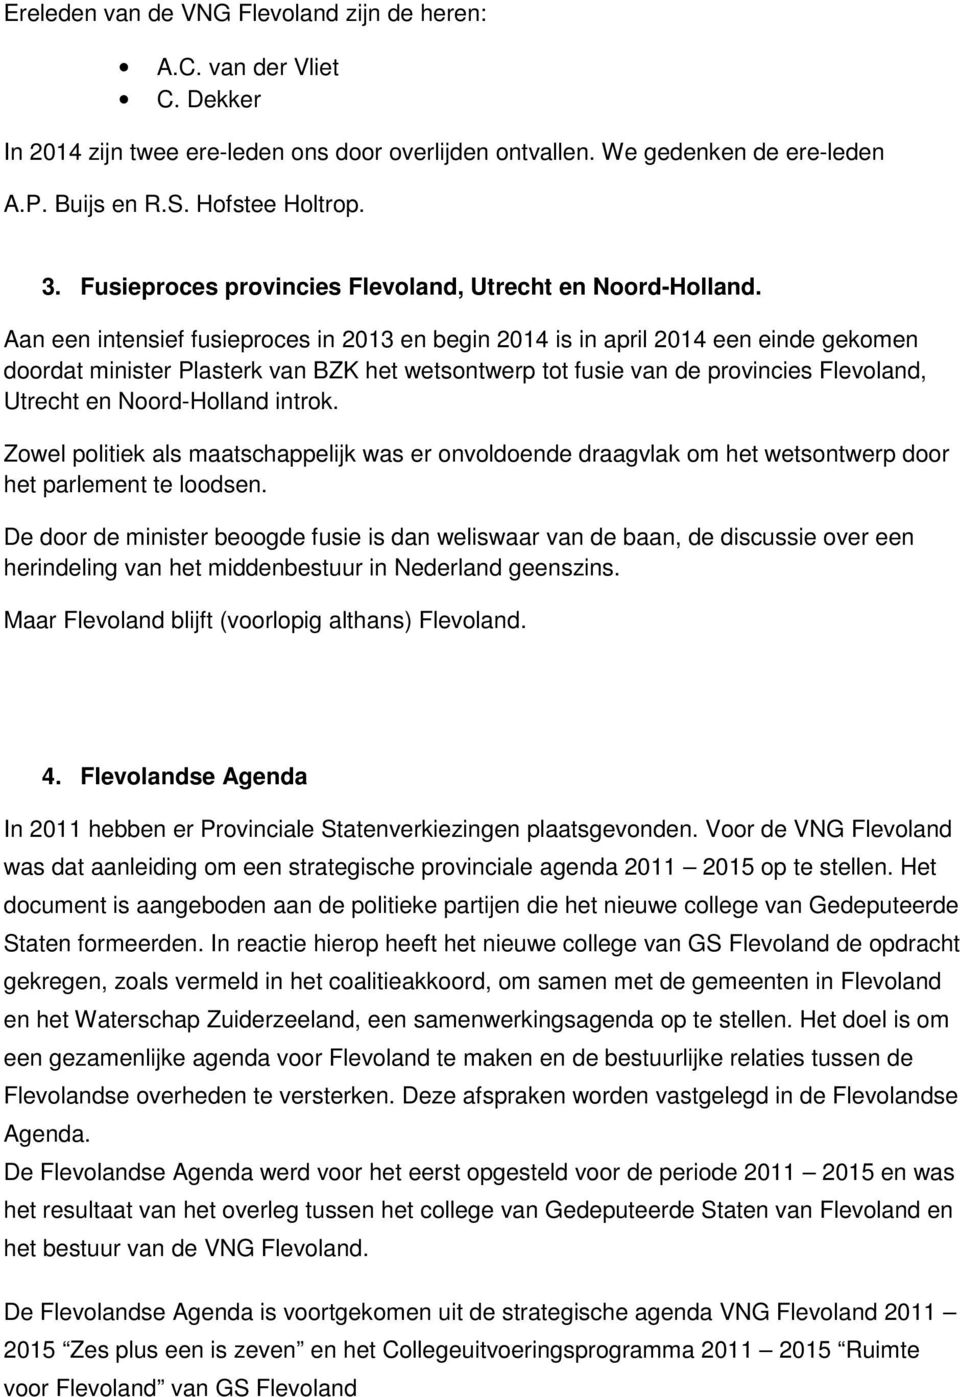 Aan een intensief fusieproces in 2013 en begin 2014 is in april 2014 een einde gekomen doordat minister Plasterk van BZK het wetsontwerp tot fusie van de provincies Flevoland, Utrecht en